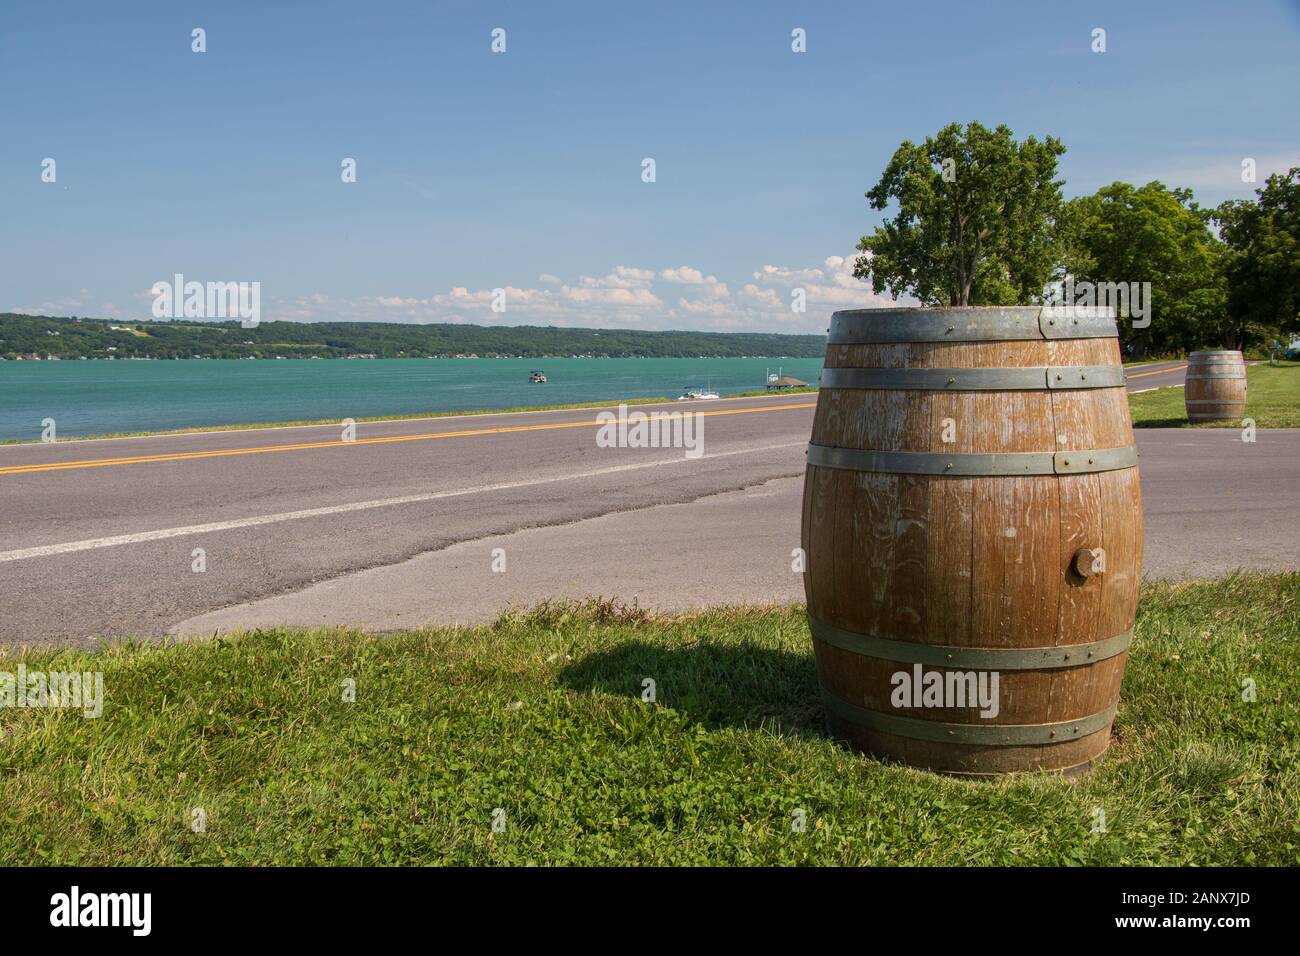 2 agosto 2019: Barilotto di vino lungo una strada e il lago Cayuga in background durante l'estate, Sheldrake Point Winery, Finger Lakes Vineyards, New York, USA Foto Stock